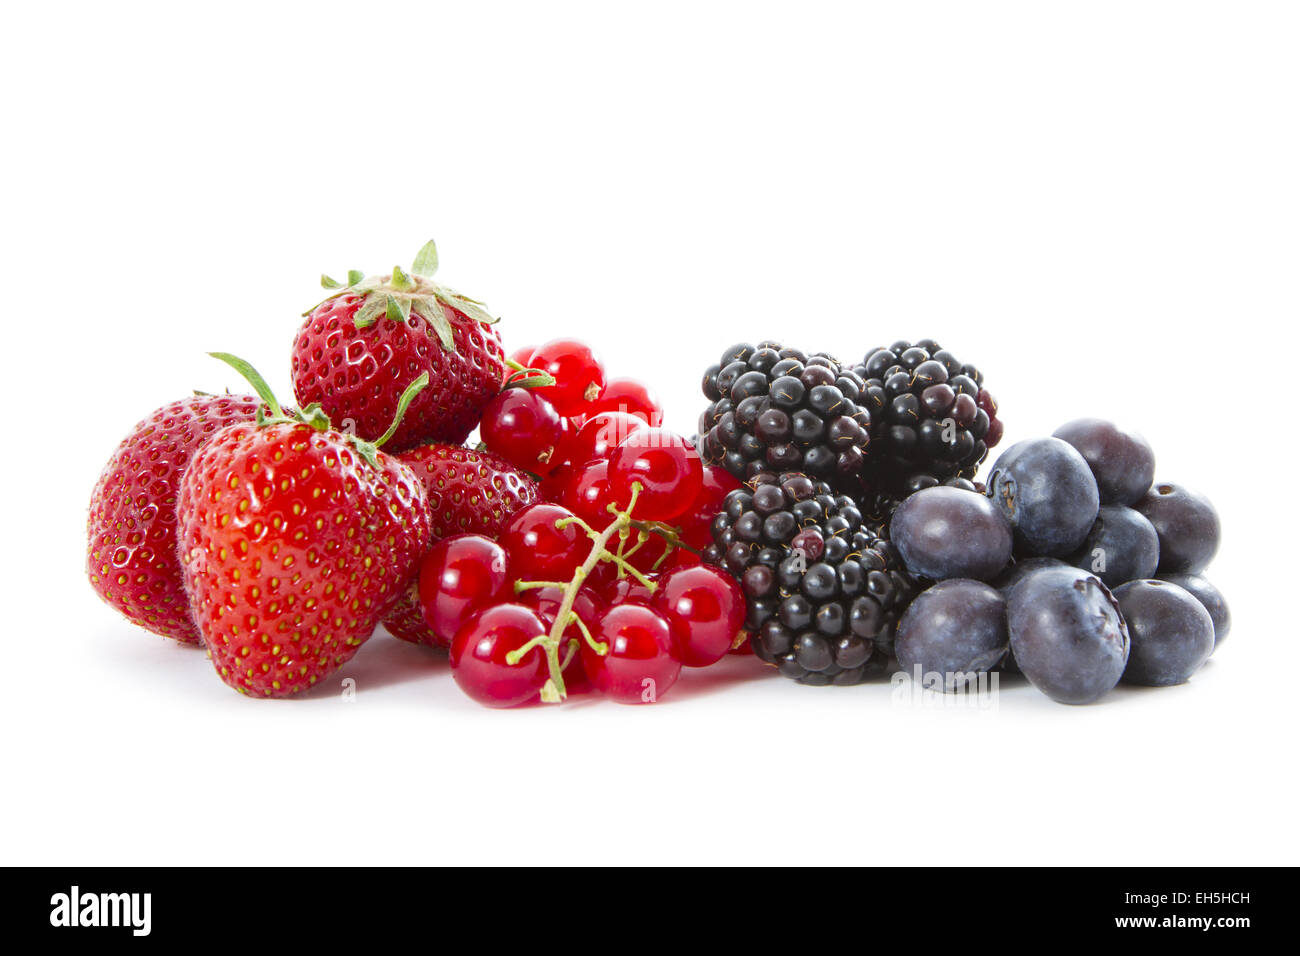 Einen frischen Haufen von Bio-Erdbeeren, Heidelbeeren, Johannisbeeren und Brombeeren auf weißem Hintergrund. Stockfoto